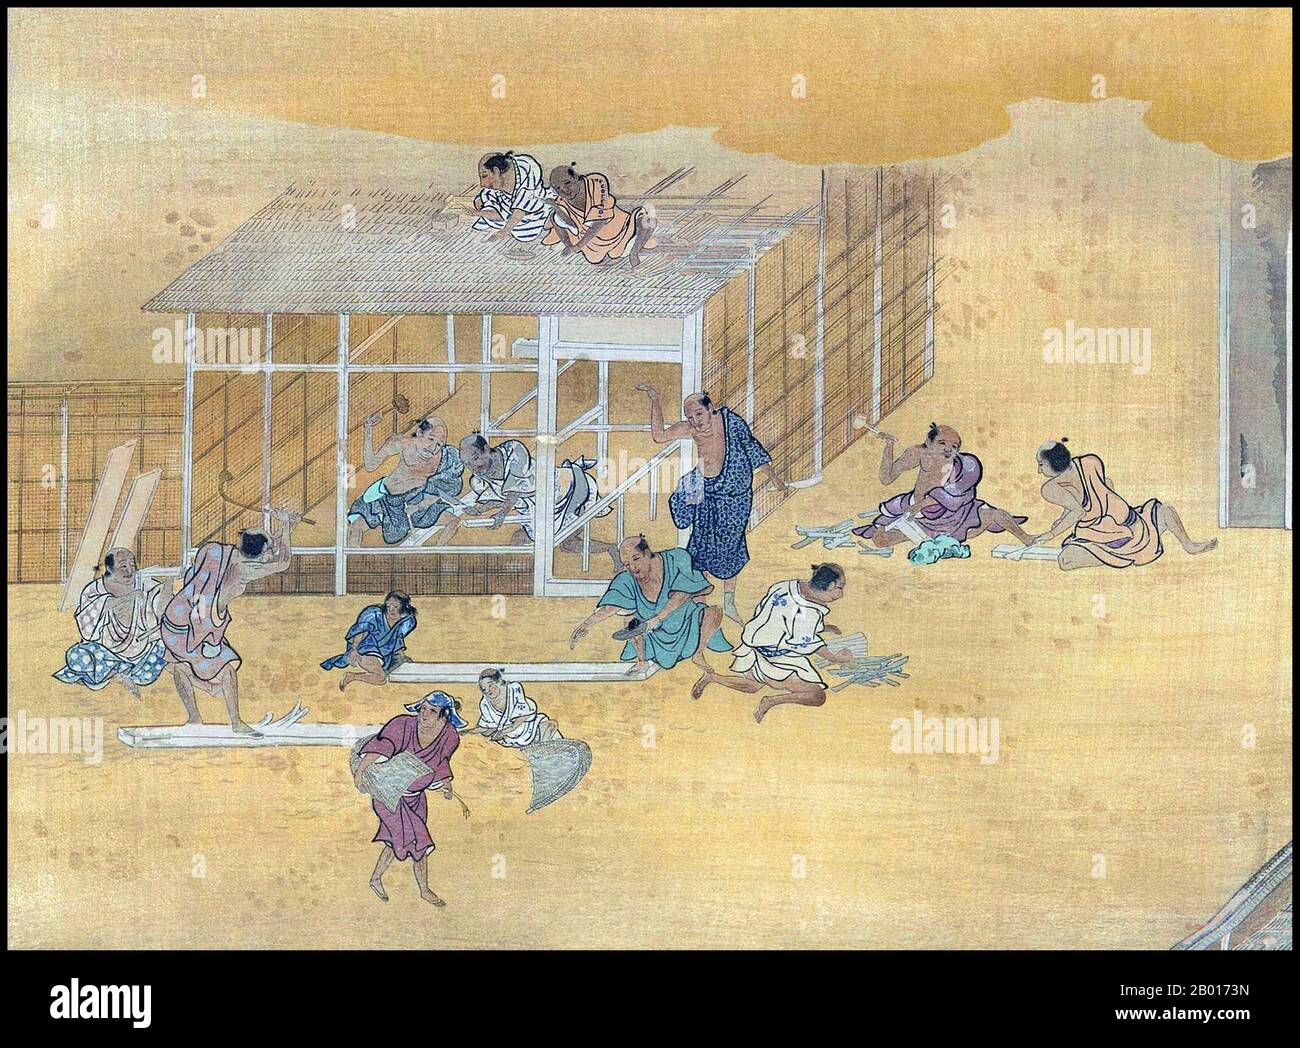 Japon: «constructeurs de maisons au travail».Peinture Handscroll, école Kano, XVIIe siècle.Yamato-e est un style de peinture japonaise inspiré des peintures de la dynastie Tang et développé à la fin de la période Heian.Il est considéré comme le style japonais classique.Depuis la période Muromachi (XVe siècle), le terme Yamato-e a été utilisé pour distinguer les œuvres des peintures de style chinois contemporain (kara-e), inspirées par les peintures du bouddhisme zen de la dynastie Song et Yuan.Les Yamato-e parlent souvent de thèmes narratifs avec du texte, montrent la beauté de la nature, par exemple des lieux célèbres (meisho-e). Banque D'Images